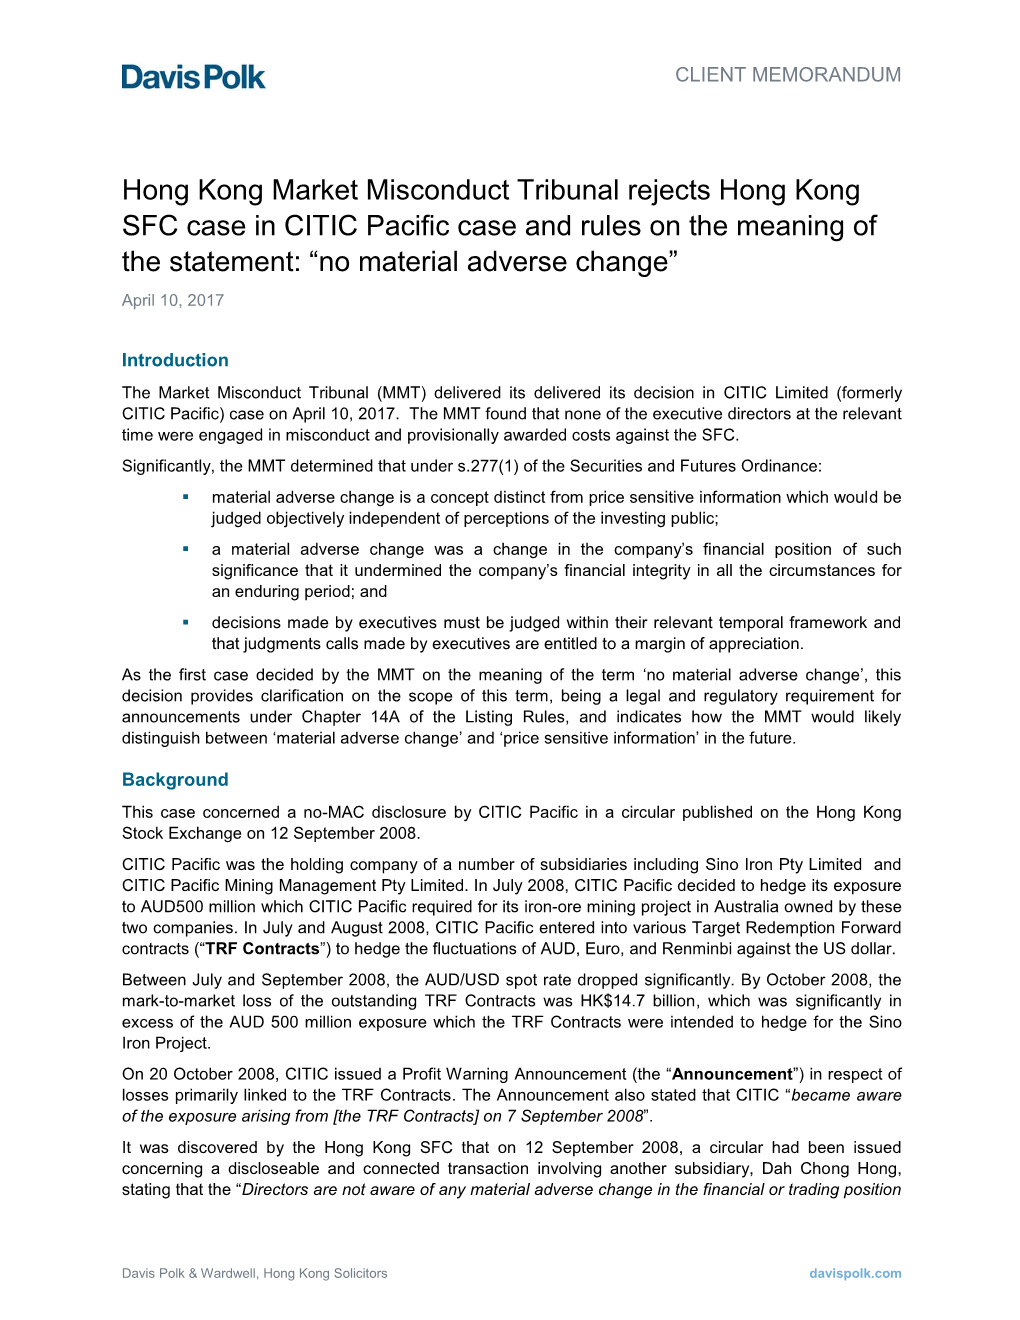 Hong Kong Market Misconduct Tribunal Rejects Hong Kong SFC